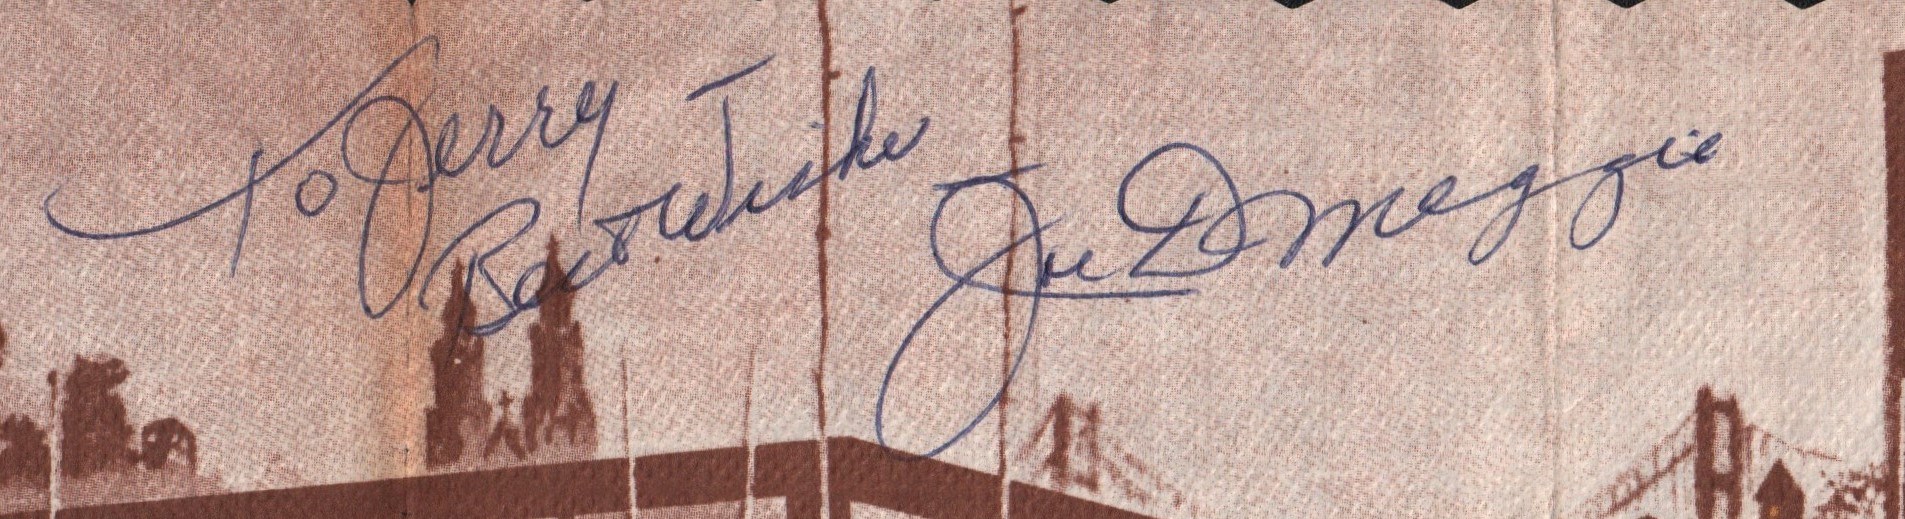 Joe DiMaggio Signed Restaurant Placemat